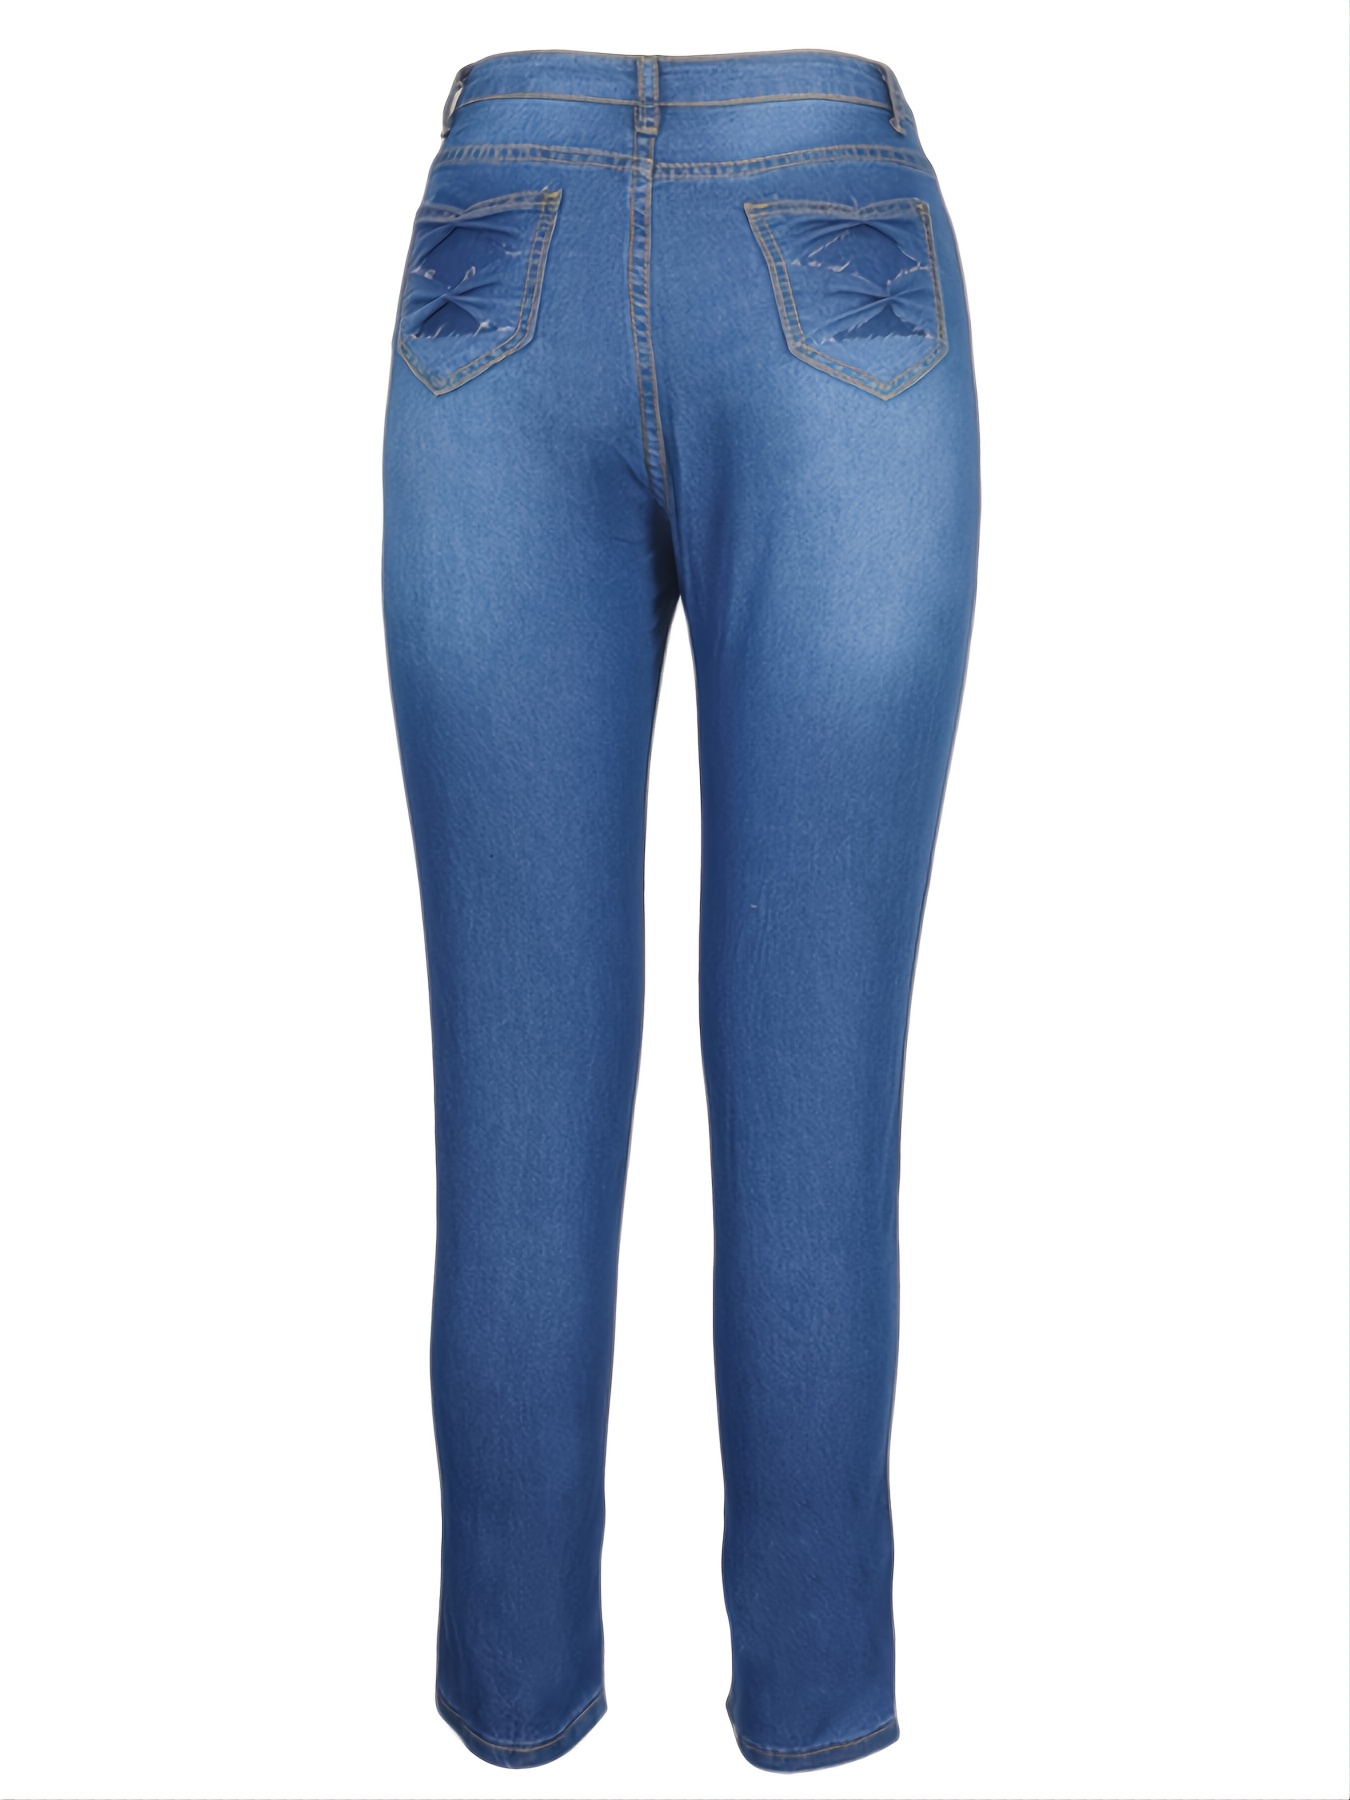 Jeans Ajustados Elásticos Mujer Pantalones Mezclilla Botones